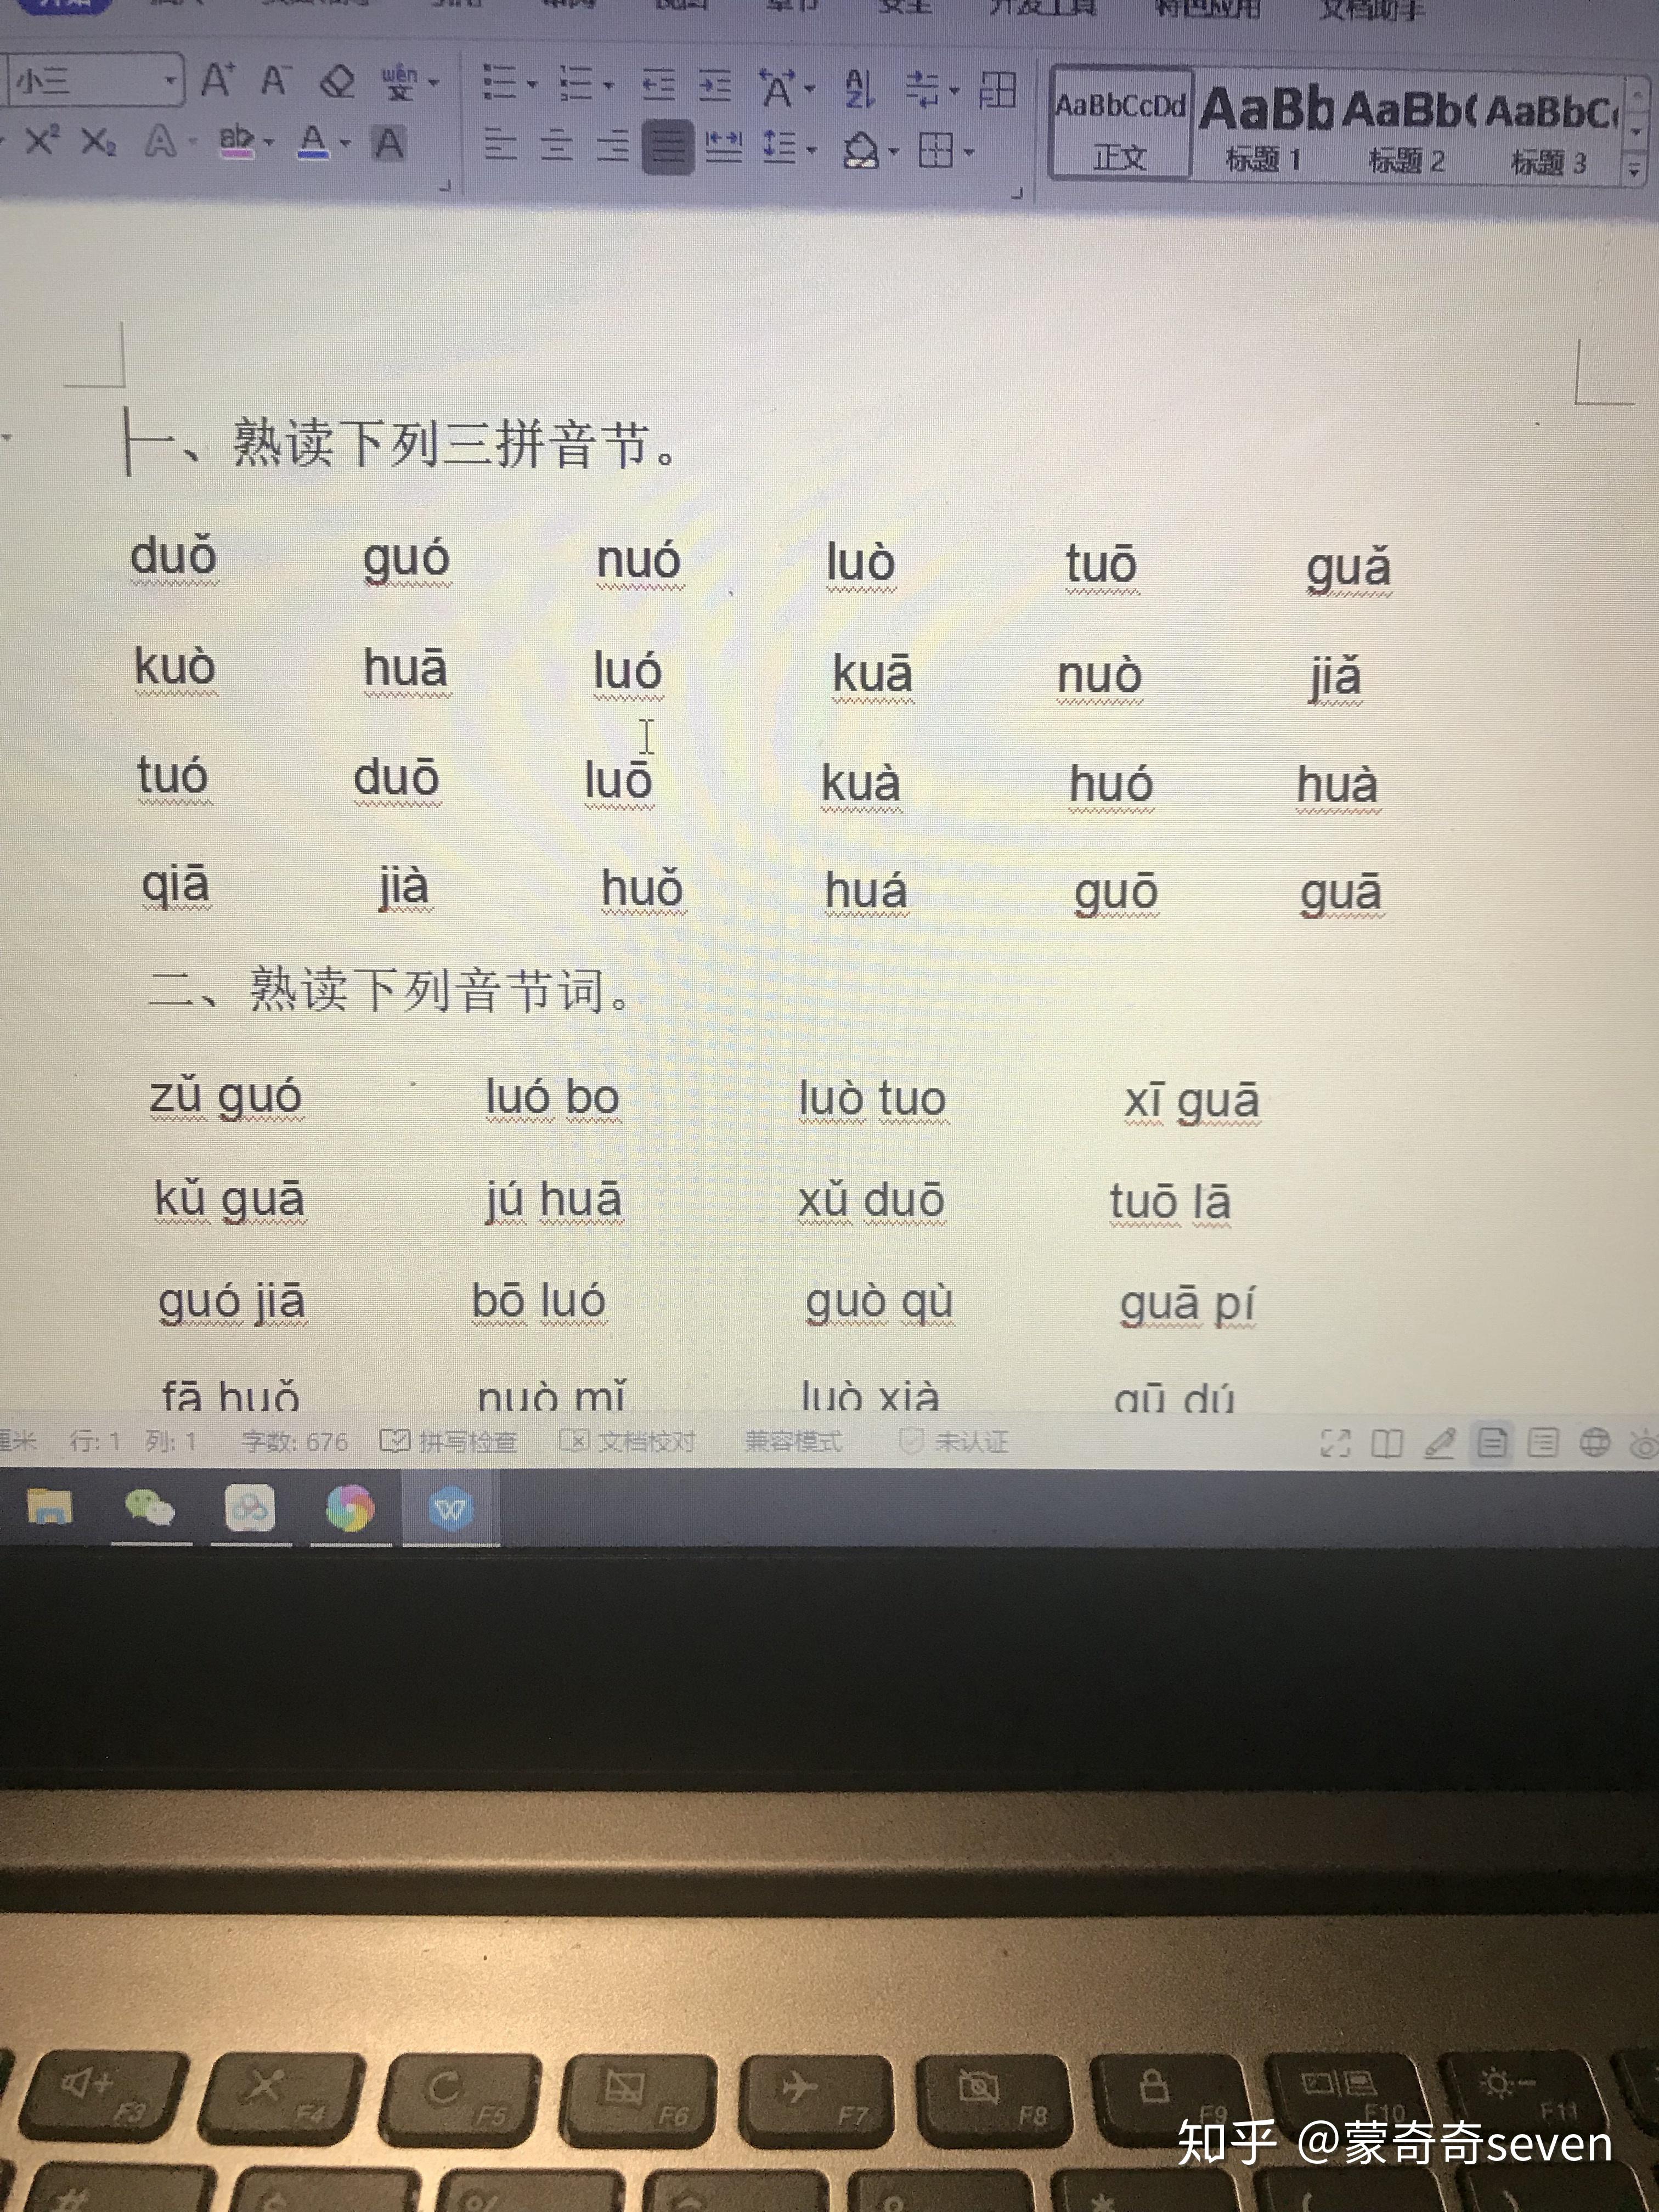 幼升小准备起来：26个汉语拼音字母表读法+写法+笔顺 - 知乎